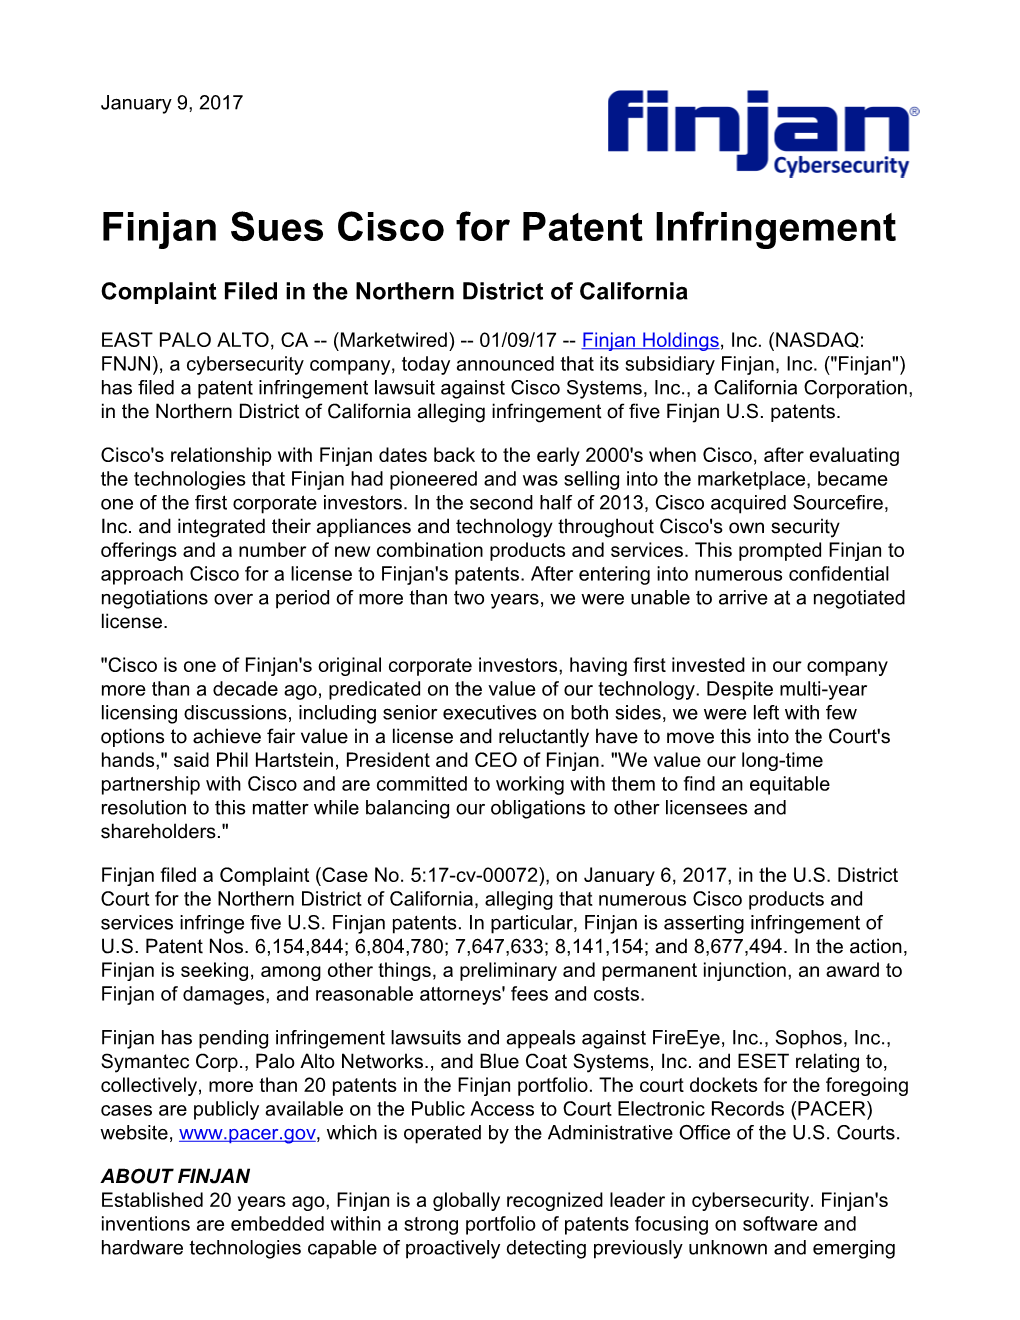 Finjan Sues Cisco for Patent Infringement